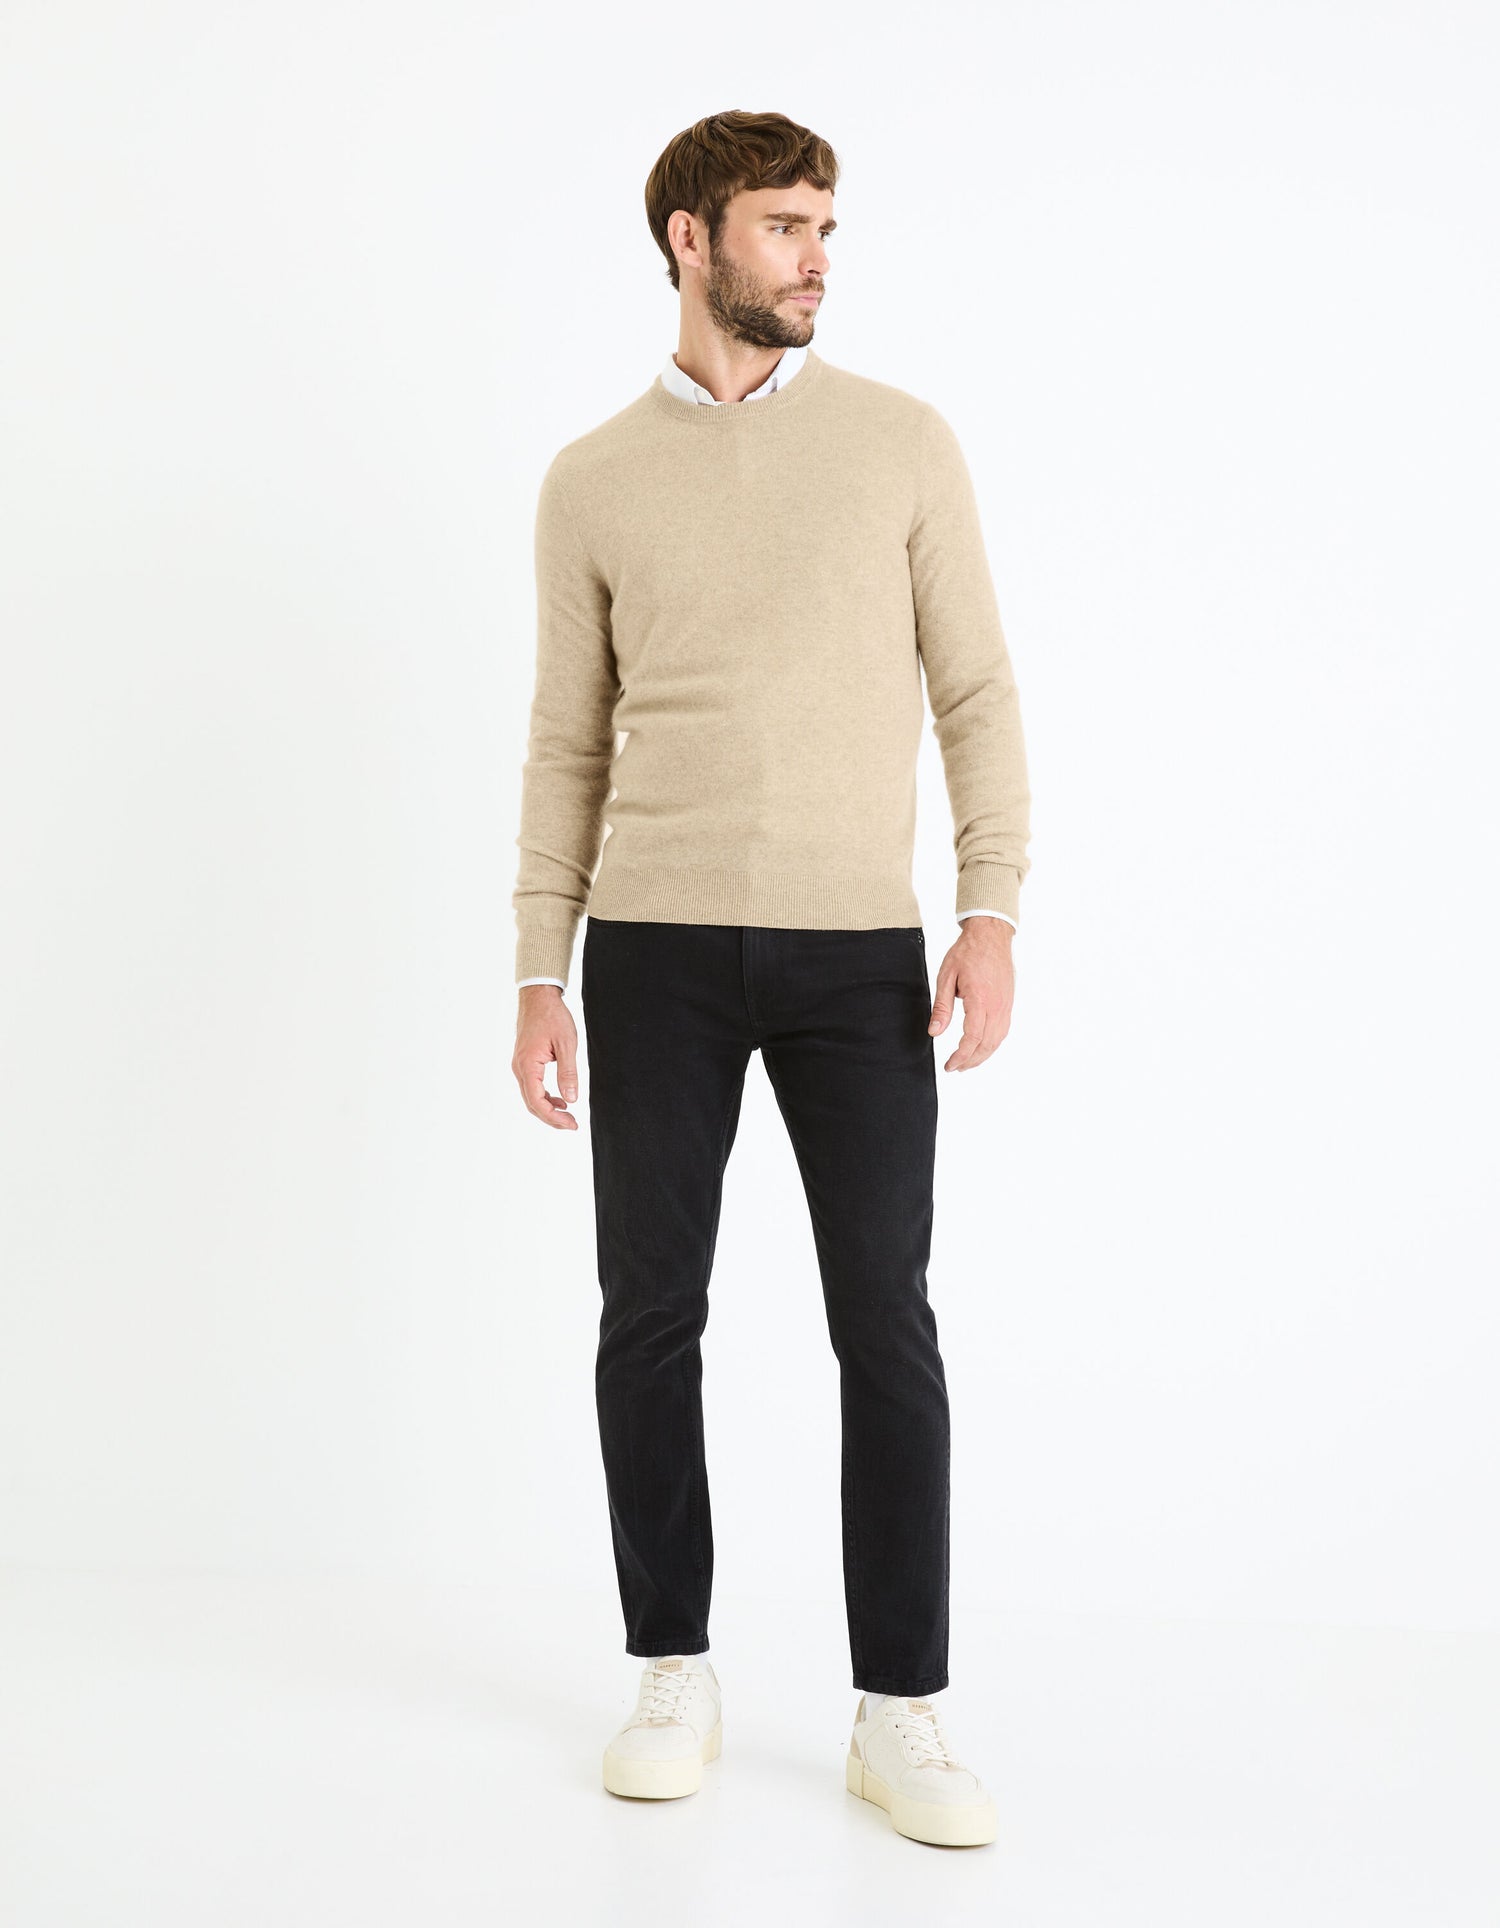 Round Neck Sweater 100% Cashmere_JECLOUD_BEIGE MEL_03